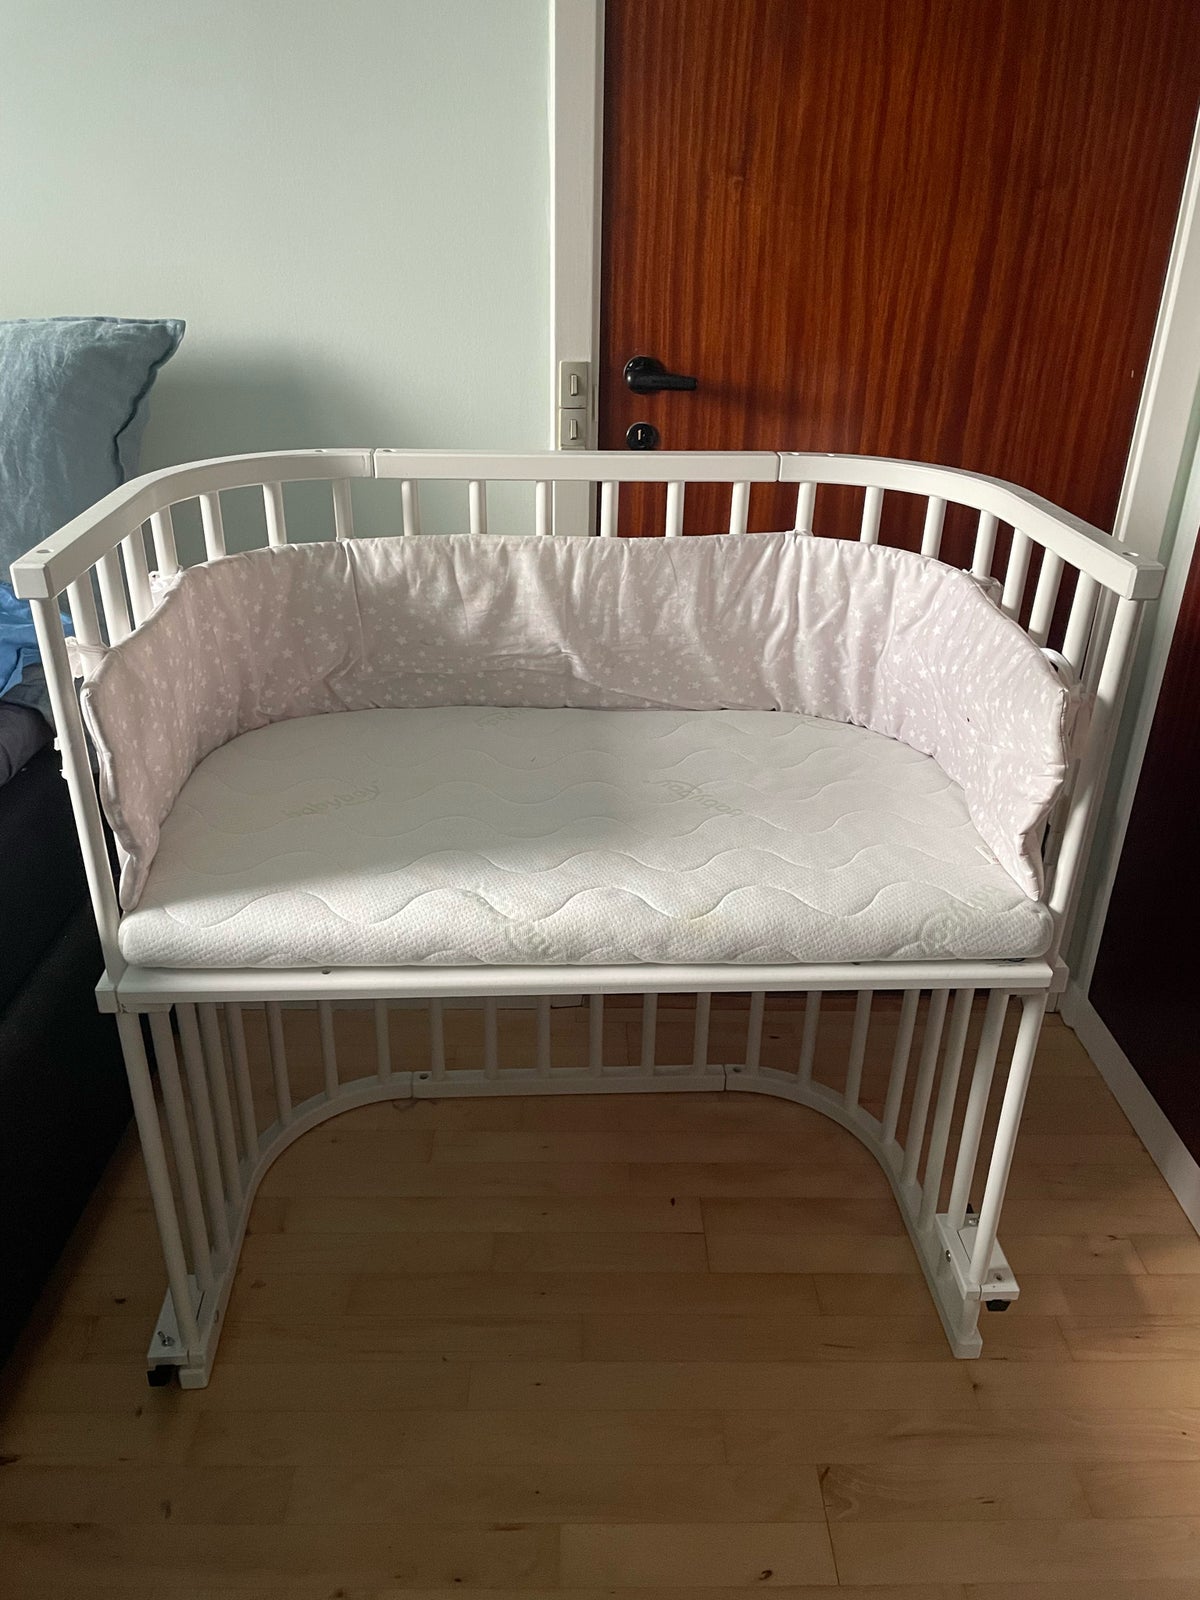 Babyseng, Bedside crib